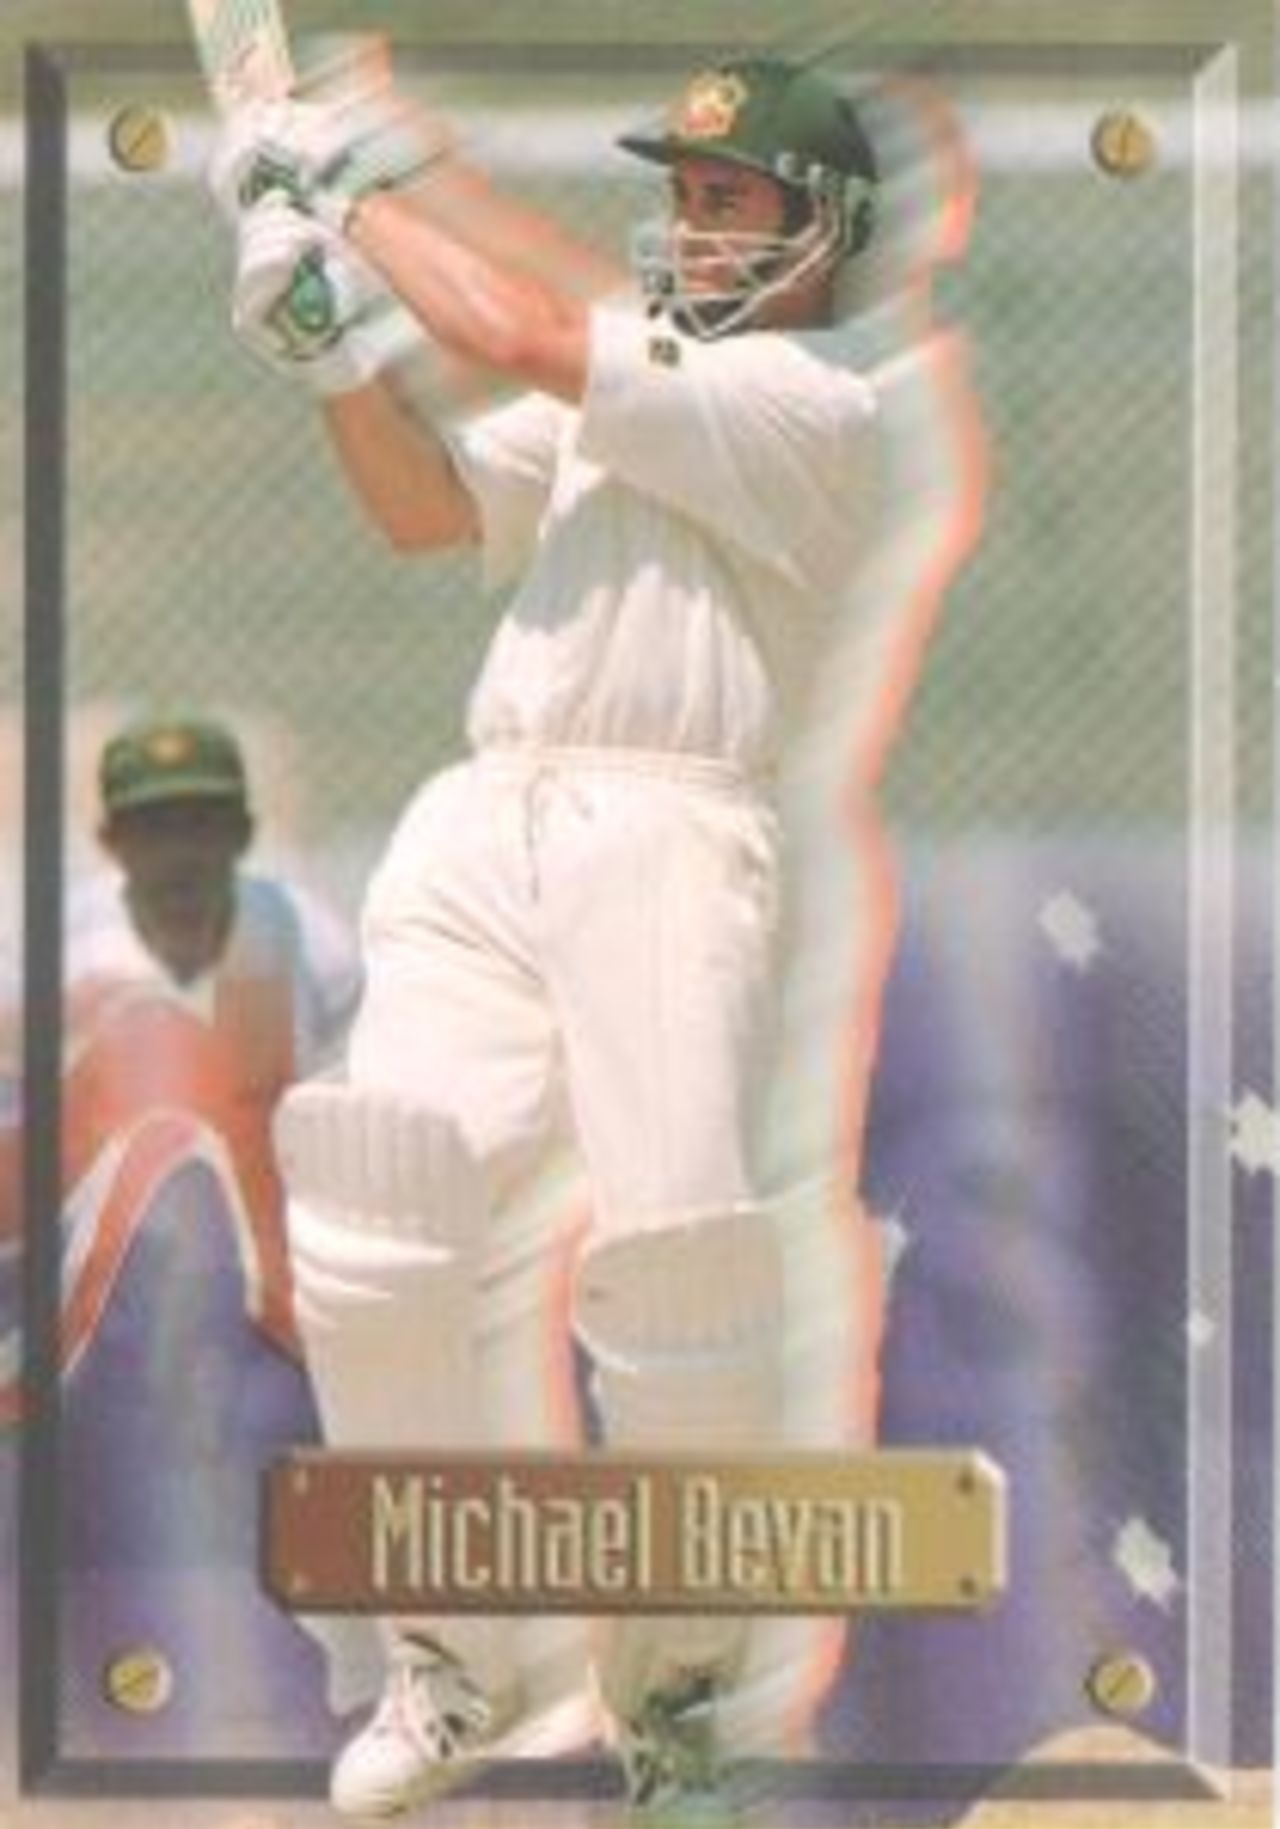 Trade card: Top deck Michael Bevan